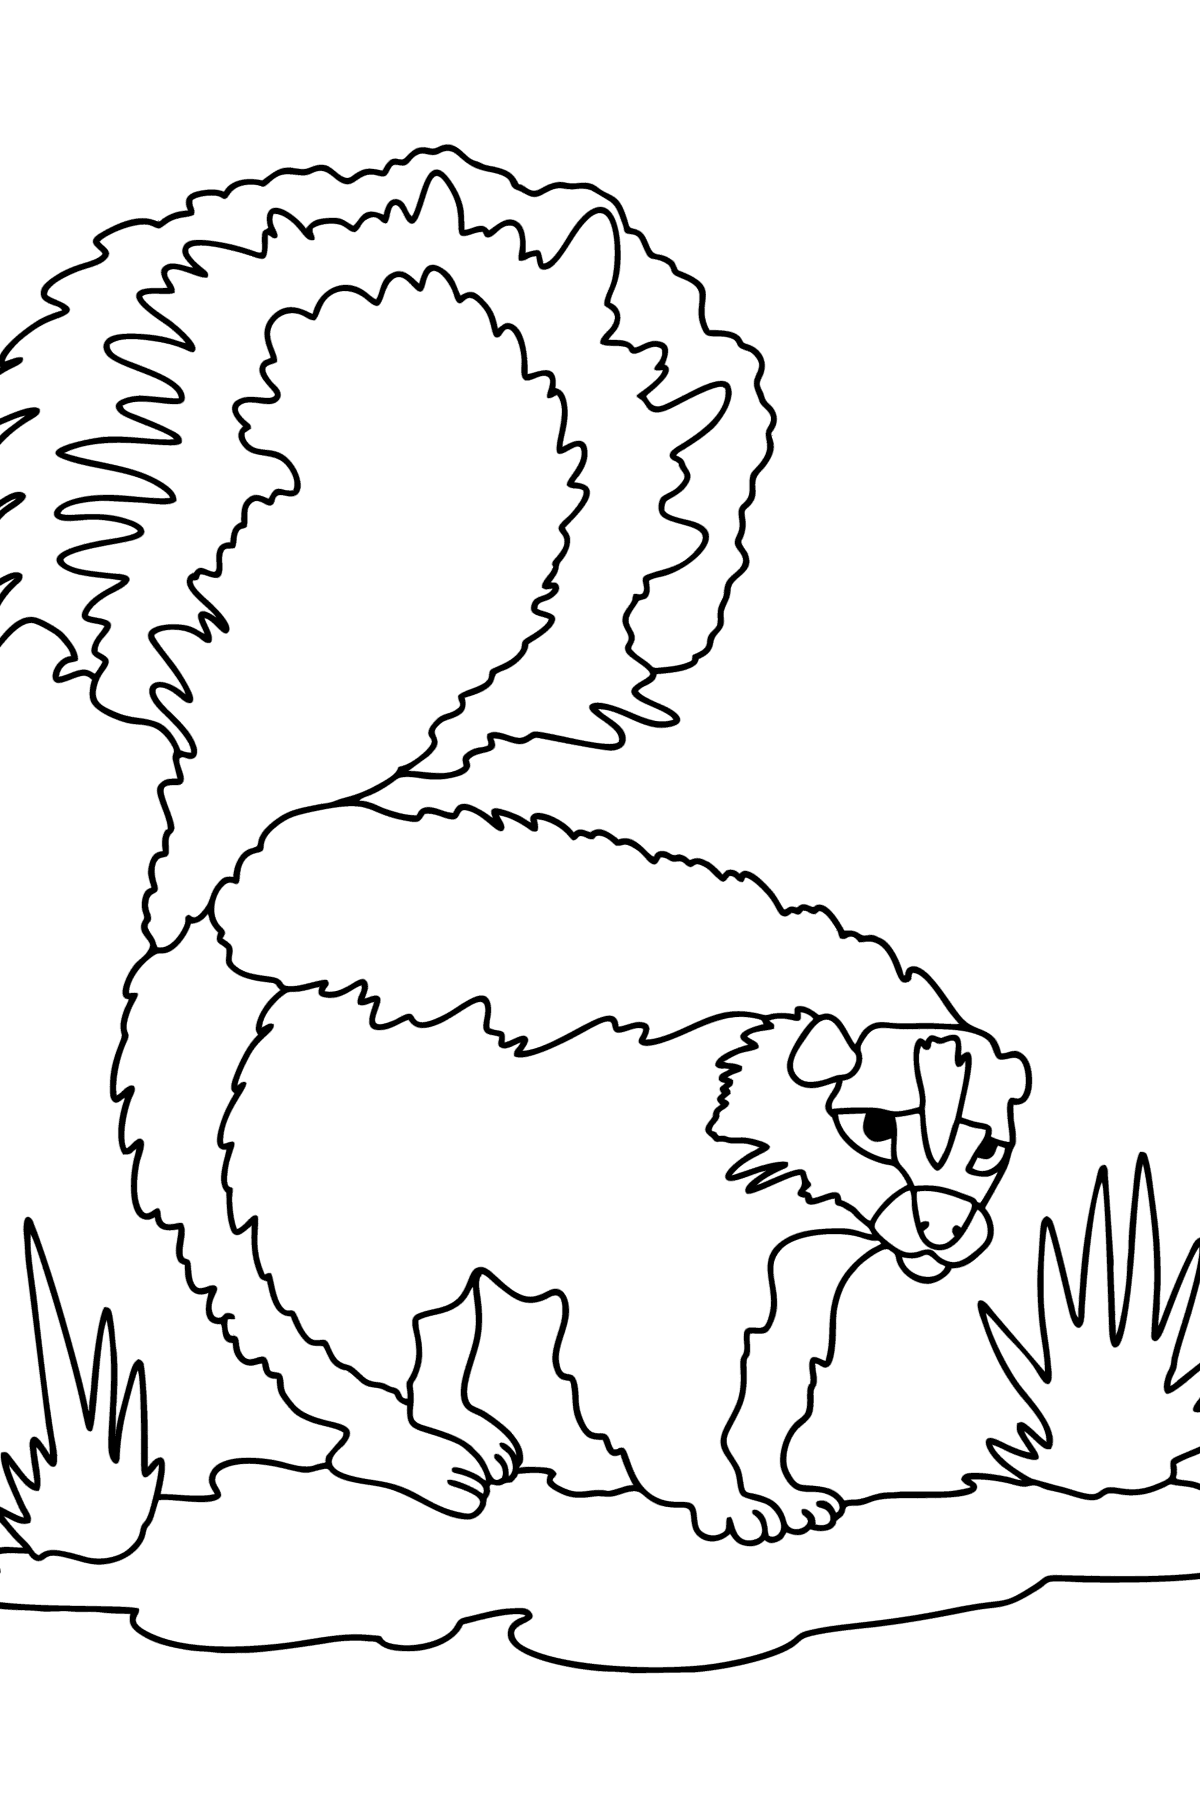 Disegno da colorare Skunk nel deserto - Disegni da colorare per bambini